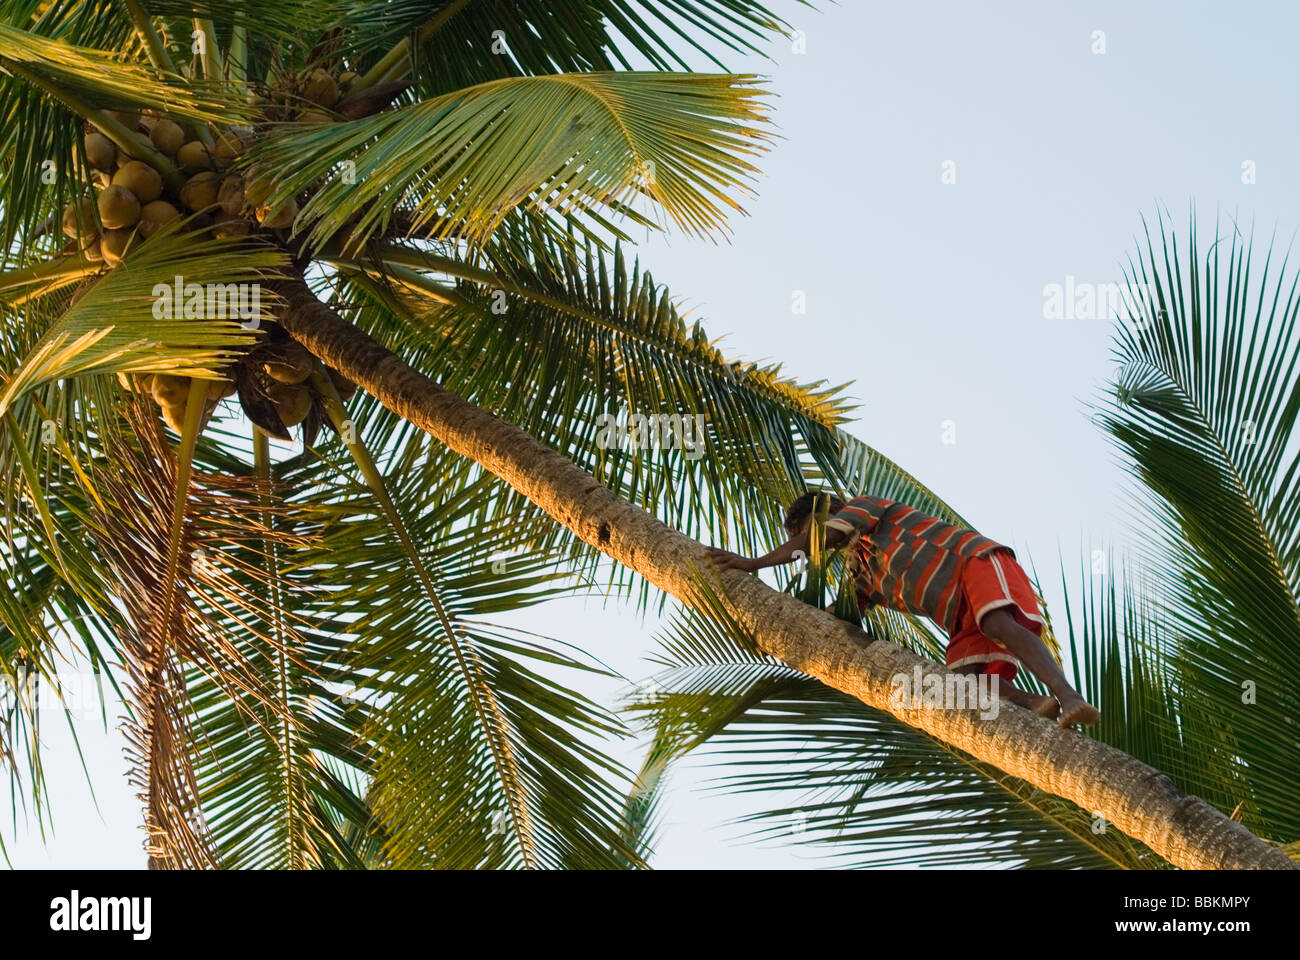 Man slimbs a coconut tree. Palolem beach, Goa, India. Stock Photo